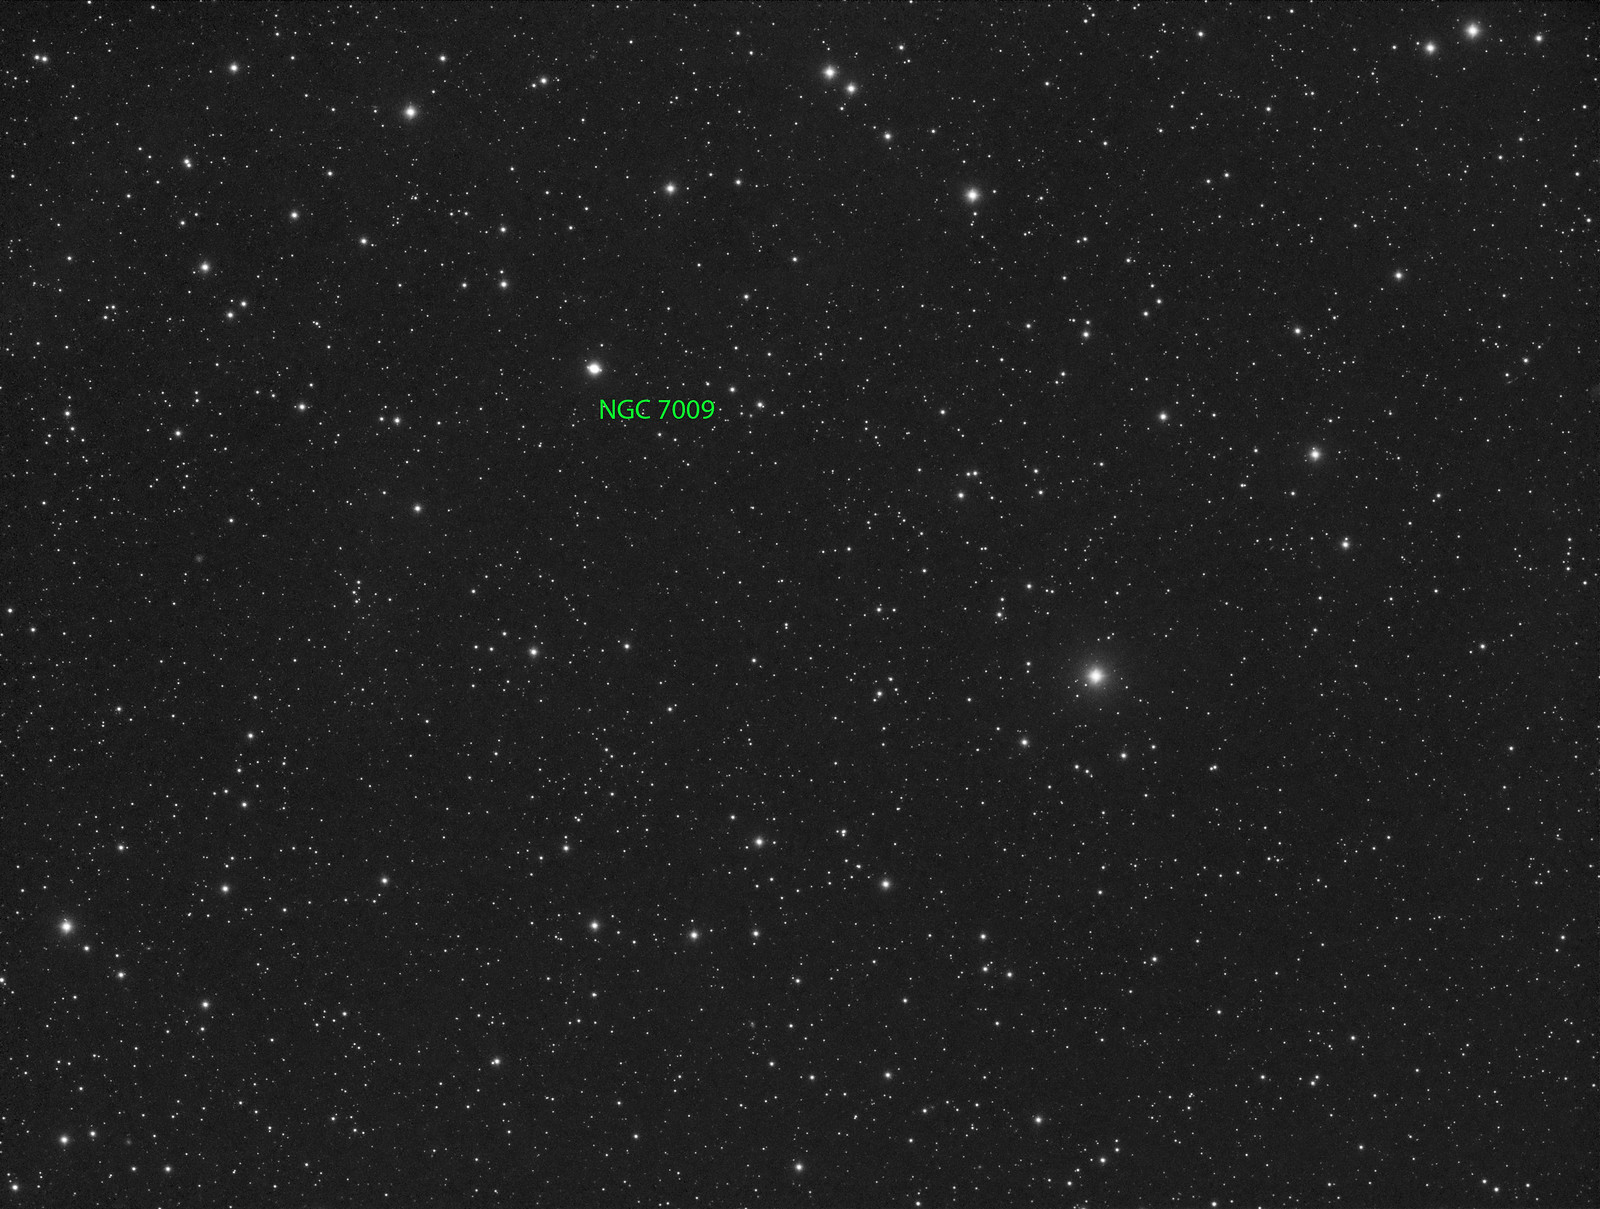 055 - NGC 7009 - Luminance